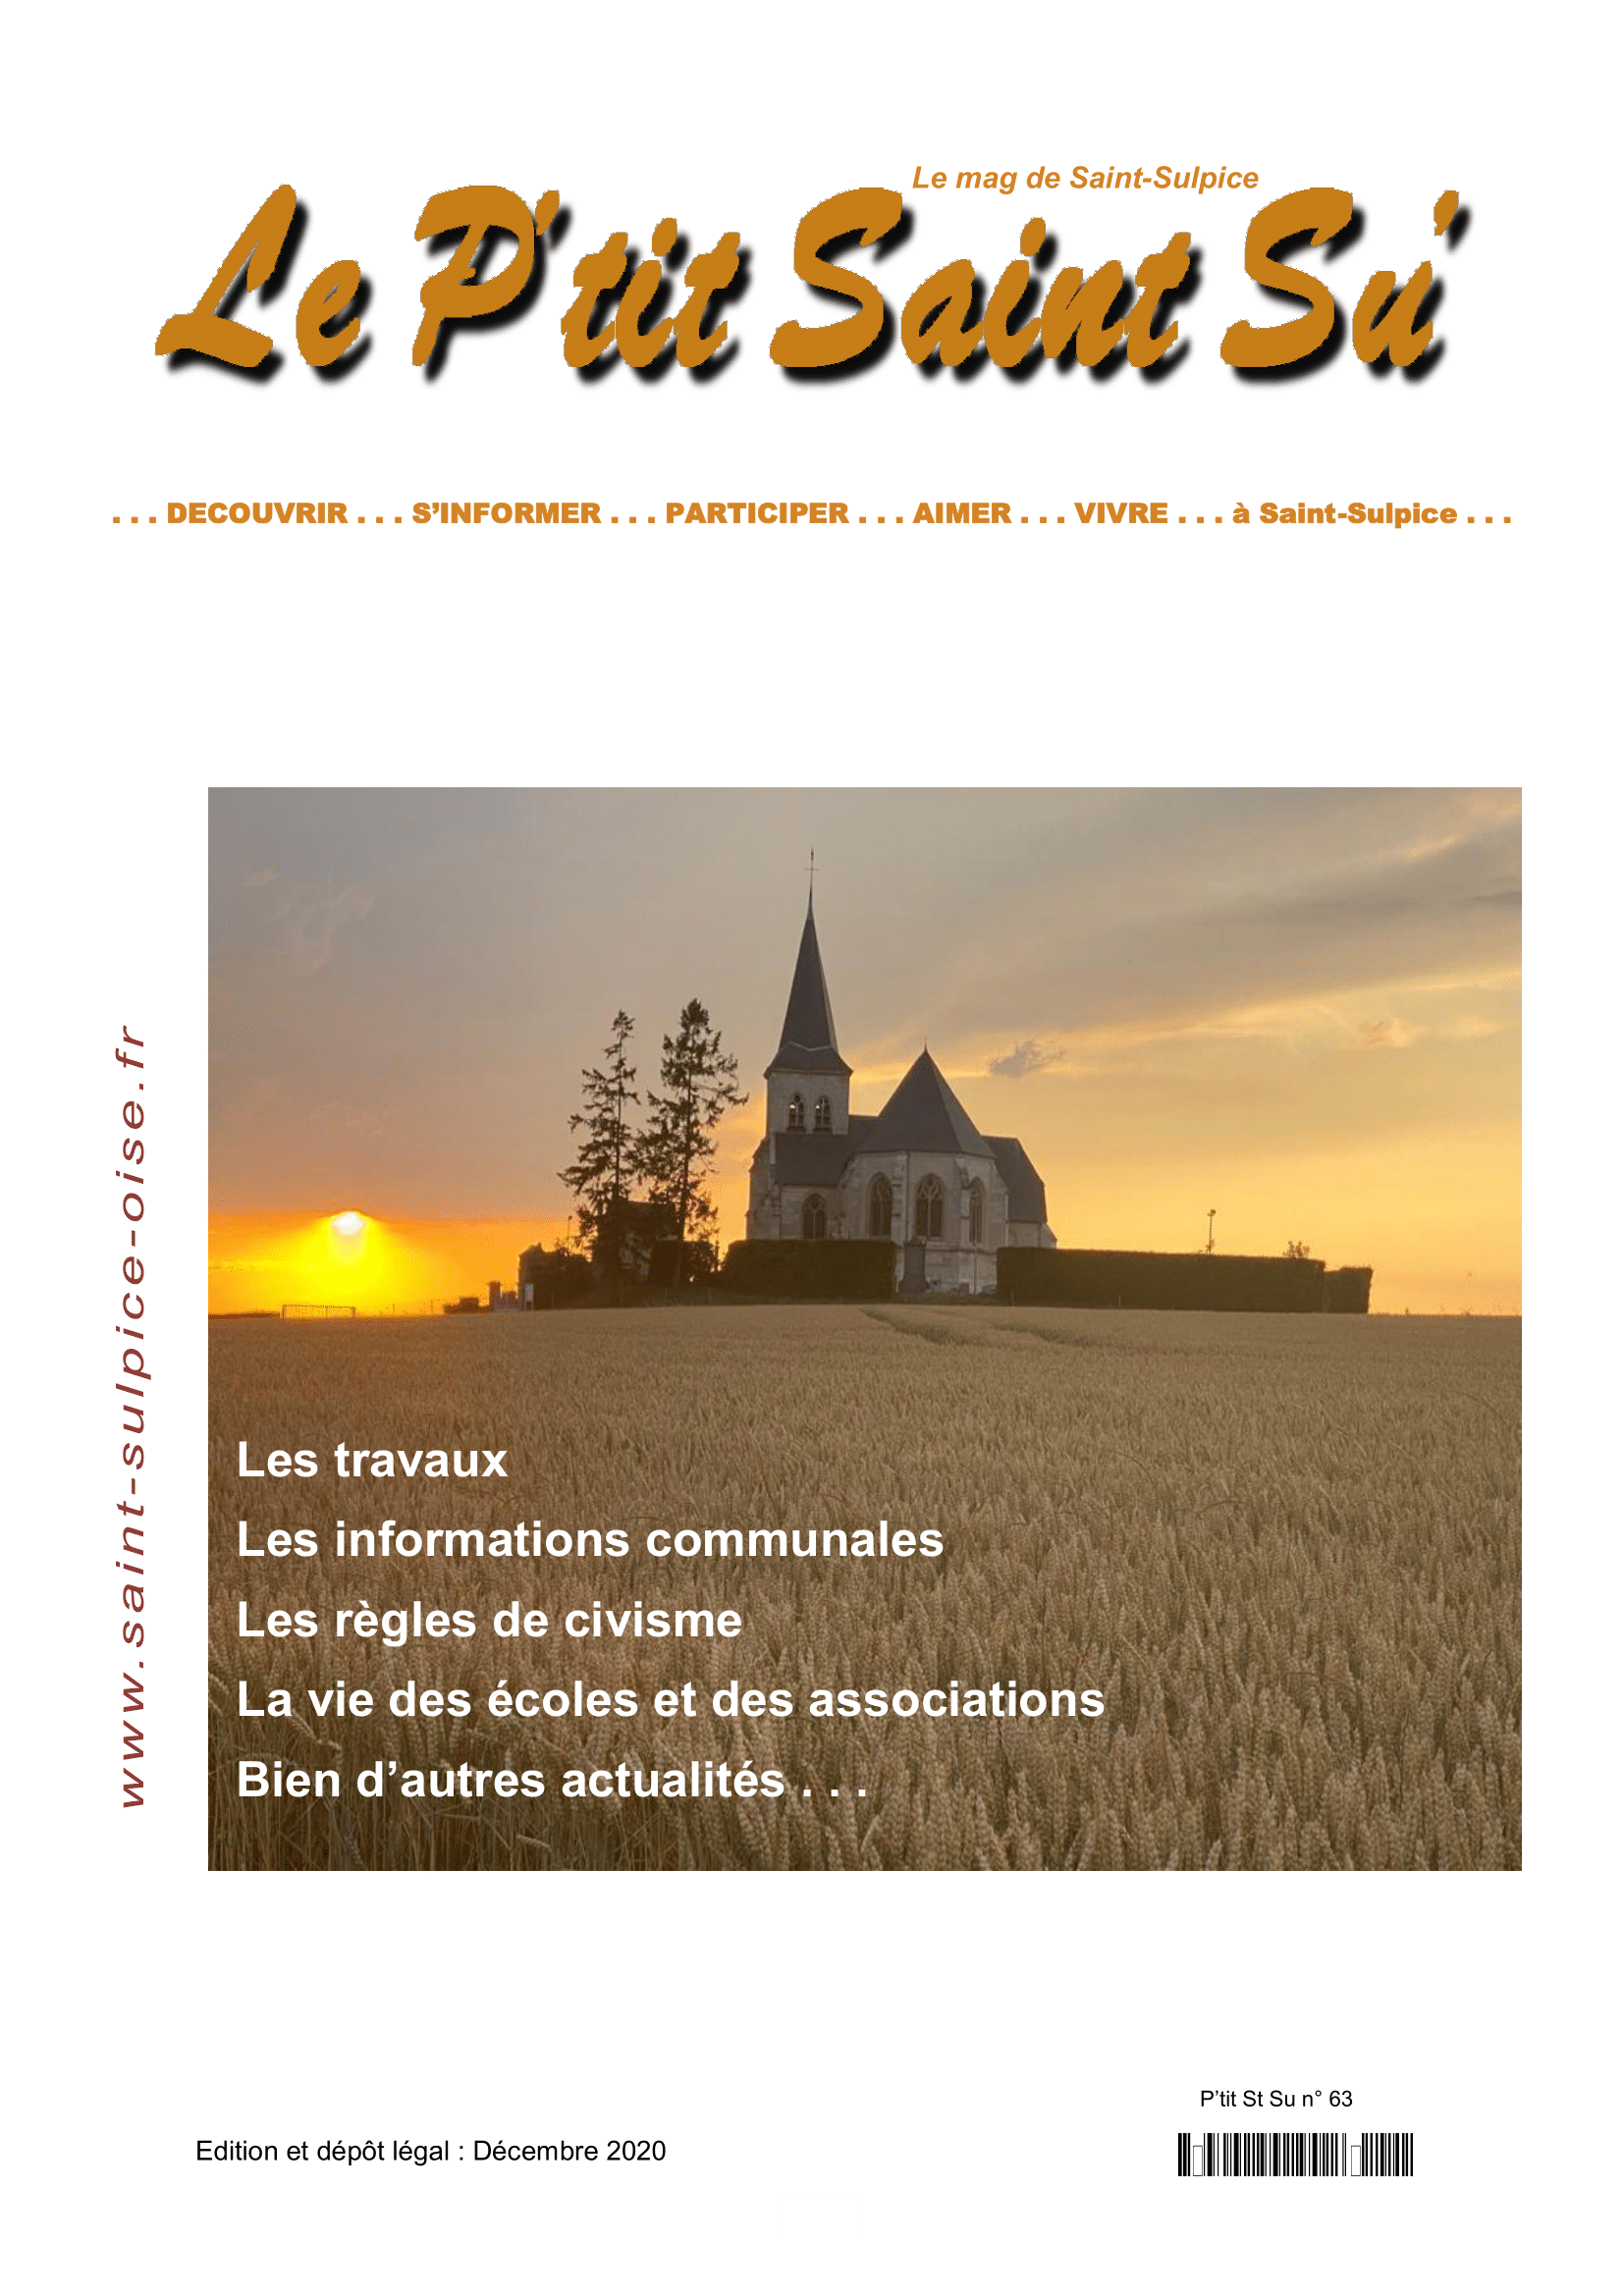 Page de garde - Le P'tit Saint Su' - Décembre 2020